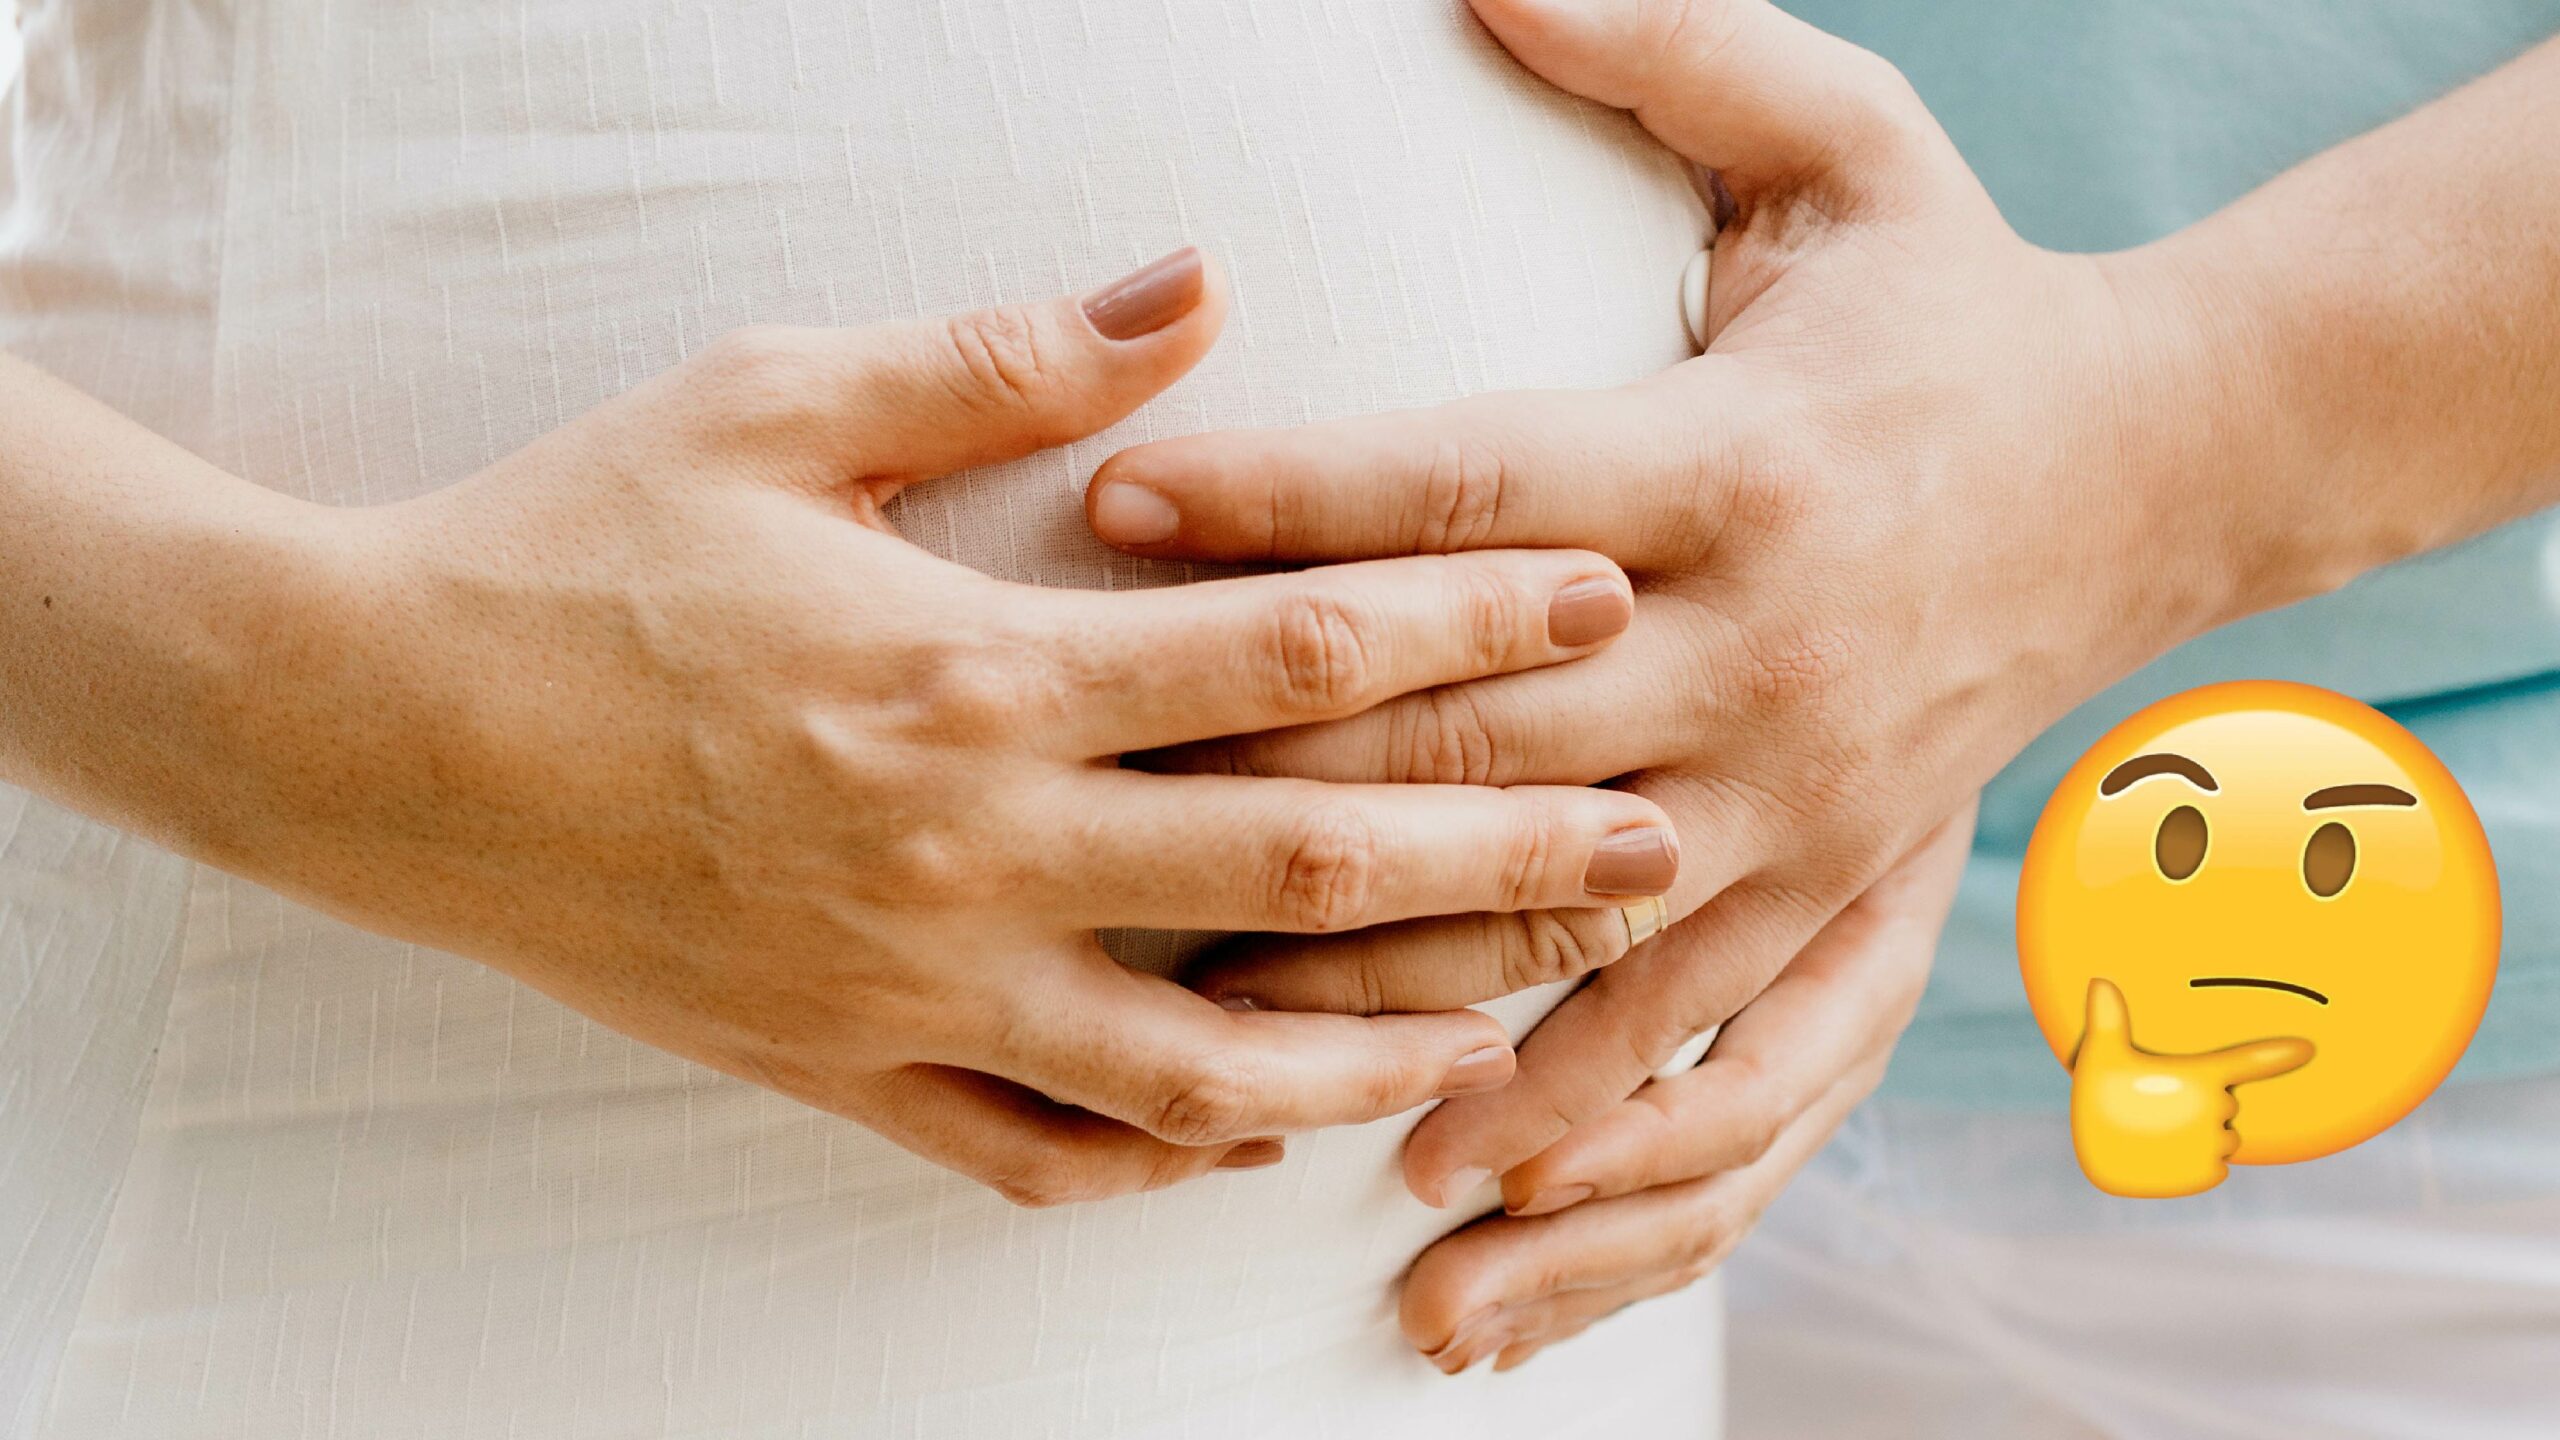 Pregnant women in Malta still not eligible for COVID-19 vaccine